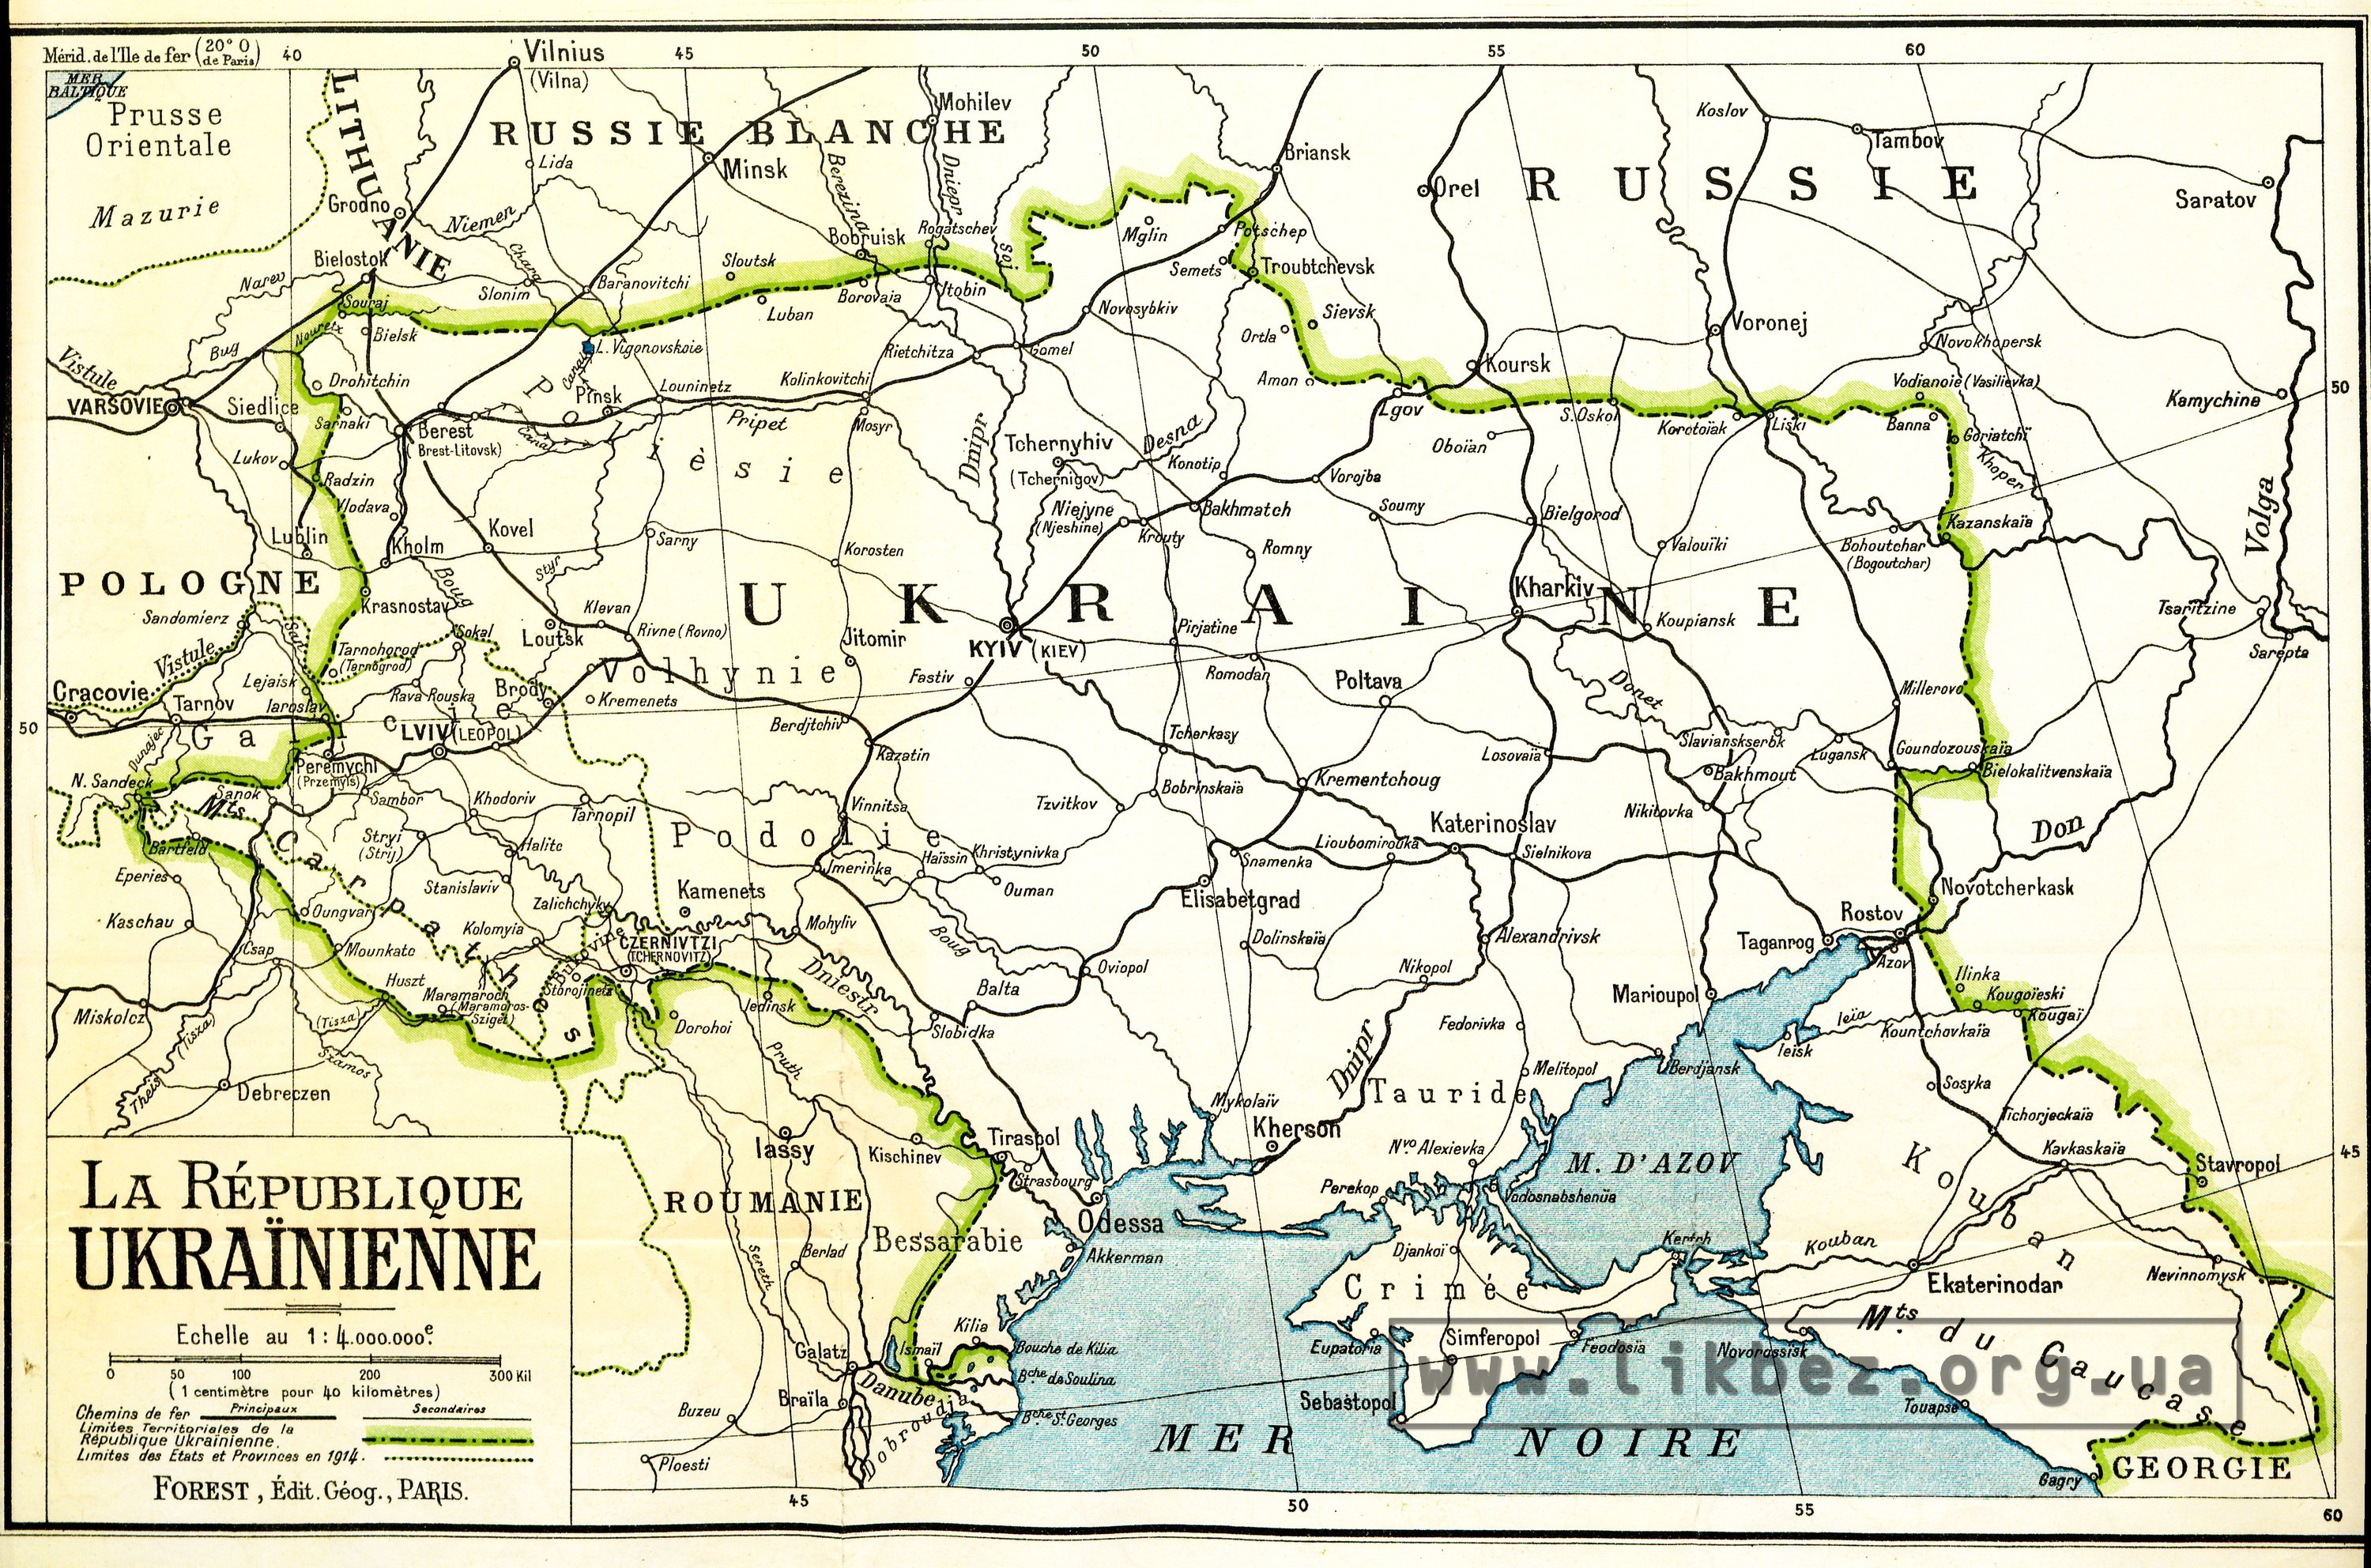 Украинская республика. Карта для Парижской мирной конференции 1919 г. —Ликбез